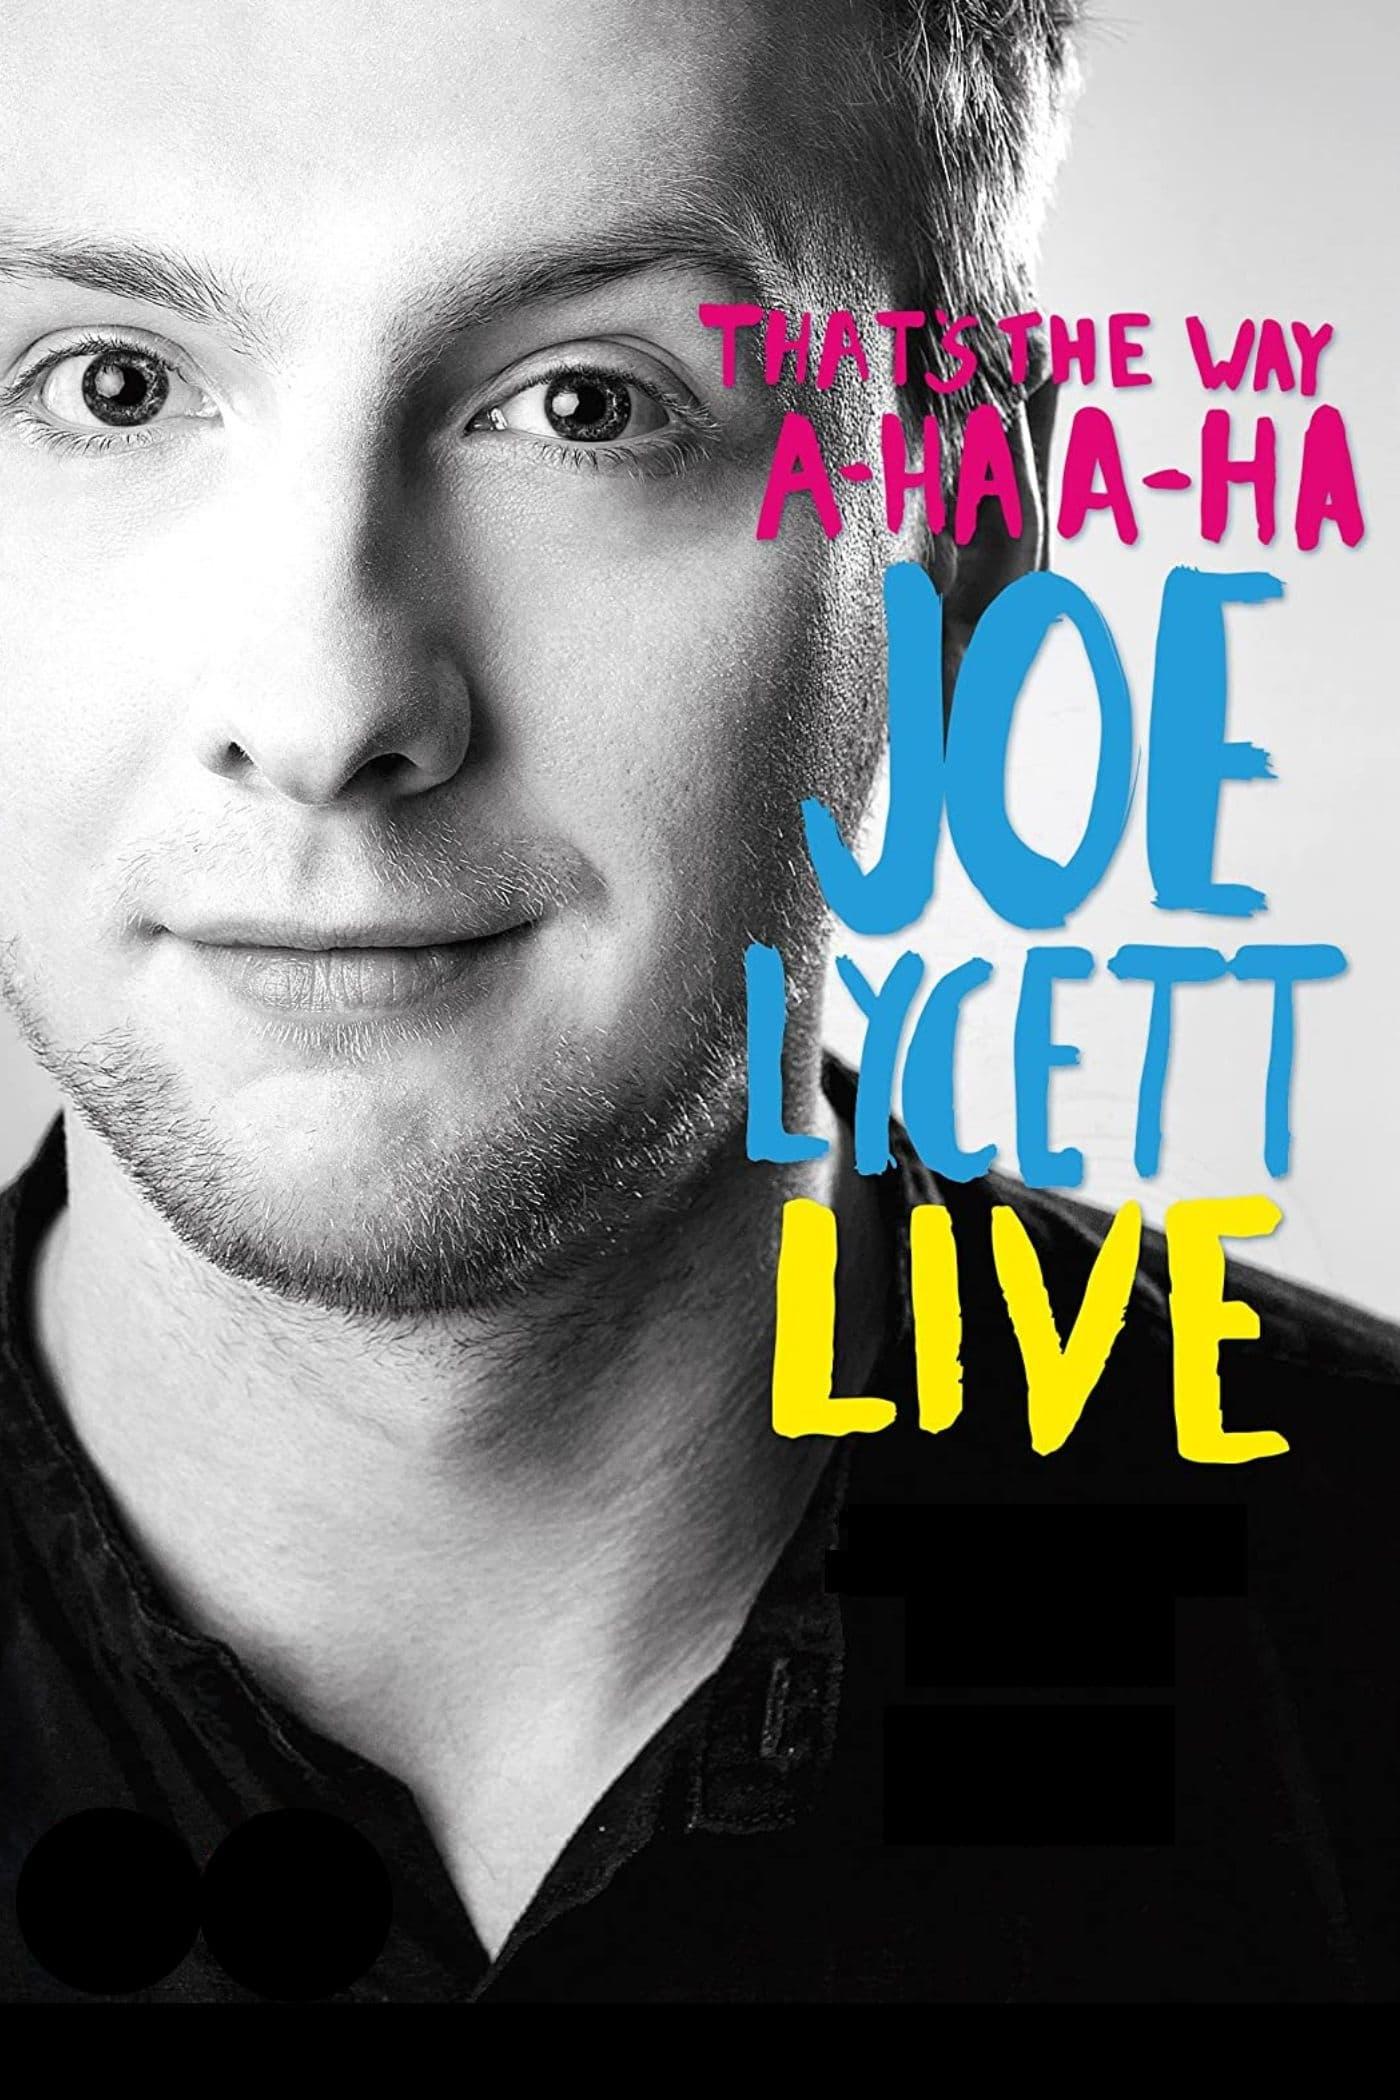 That's the Way, A-Ha, A-Ha: Joe Lycett Live poster